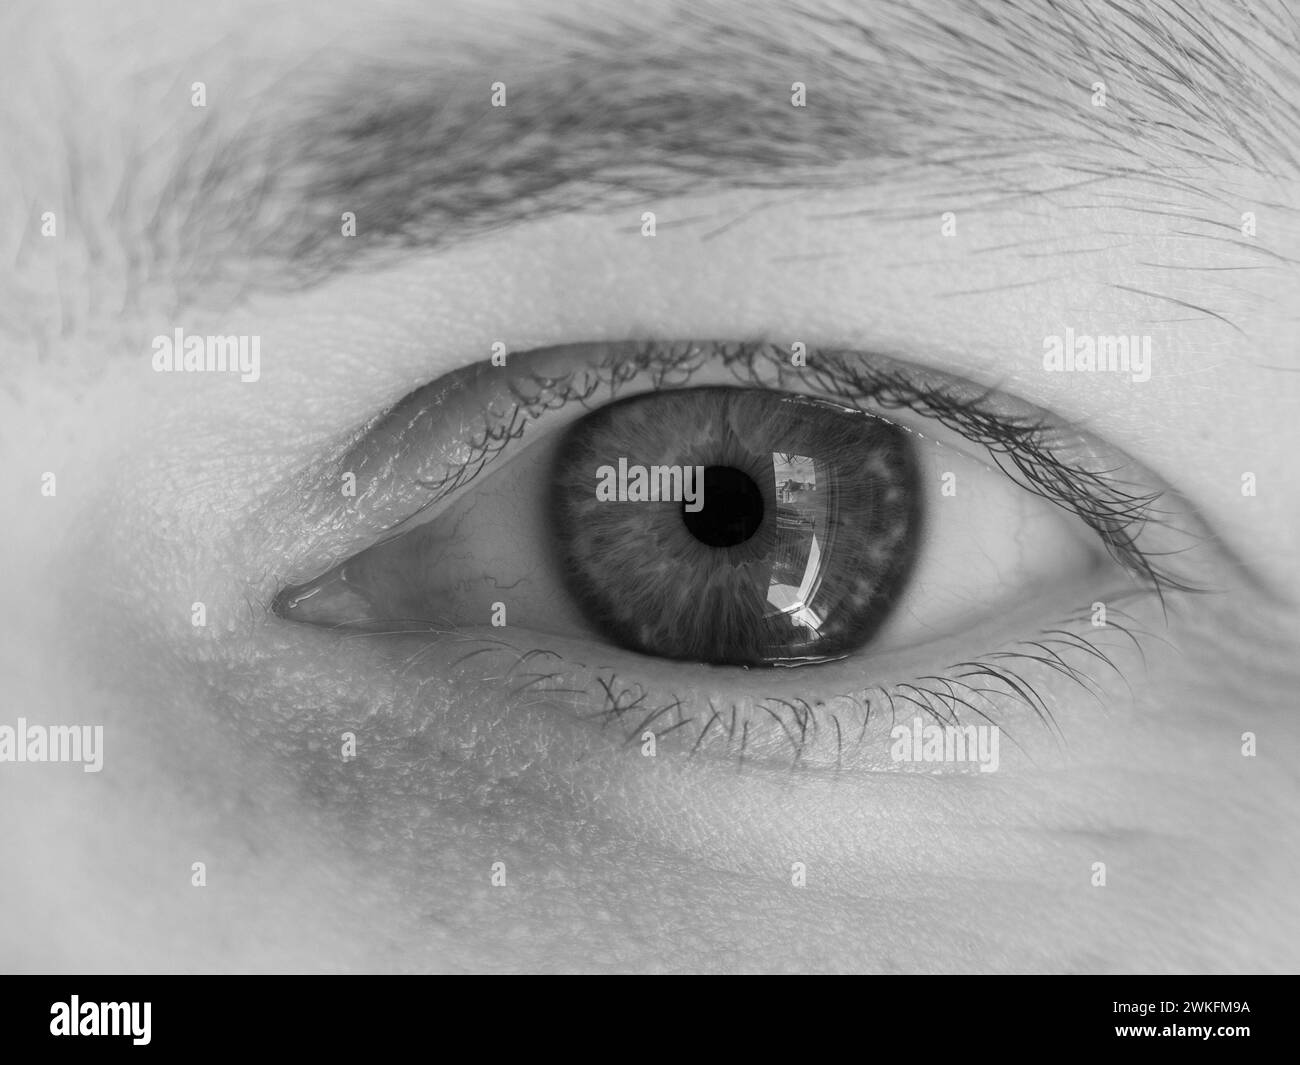 Primo piano di un occhio umano che mostra dettagli intricati nella fotografia in bianco e nero Foto Stock